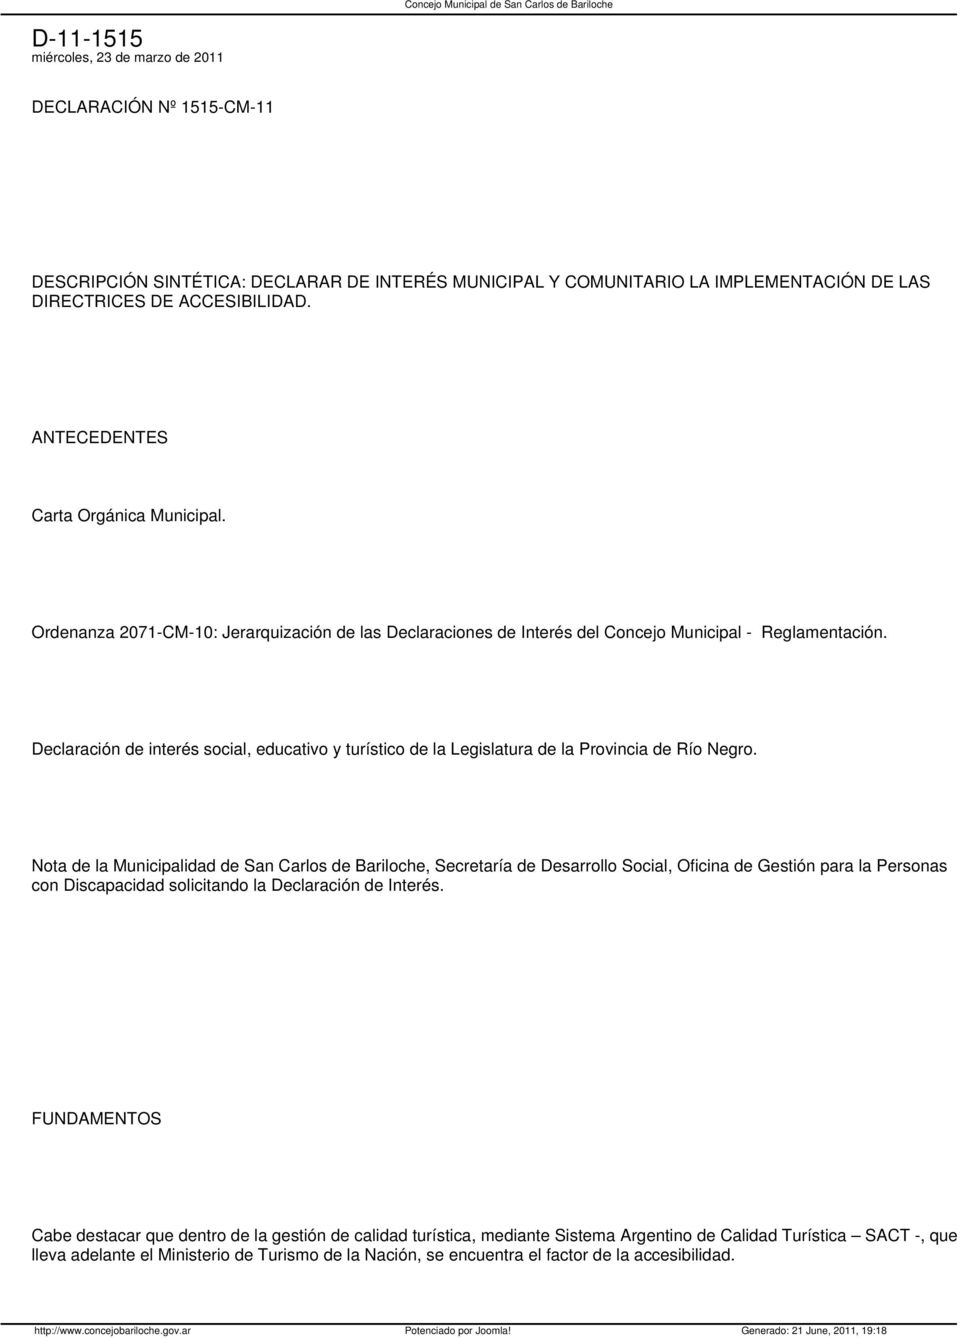 Declaración de interés social, educativo y turístico de la Legislatura de la Provincia de Río Negro.